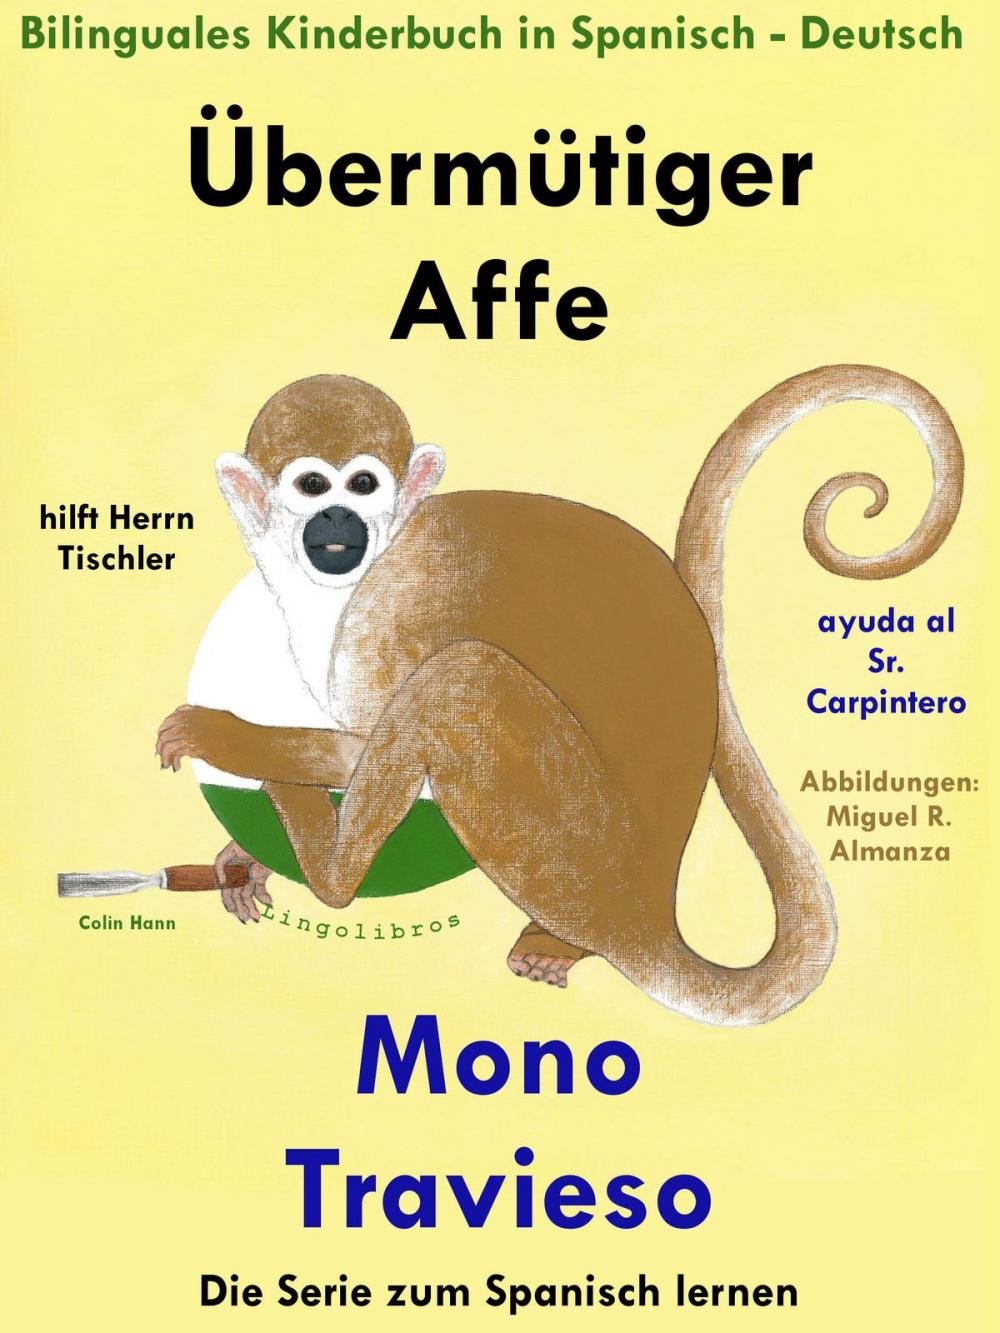 Big bigCover of Bilinguales Kinderbuch in Deutsch und Spanisch: Übermütiger Affe hilft Herrn Tischler - Mono Travieso ayuda al Sr. Carpintero (Die Serie zum Spanisch lernen)